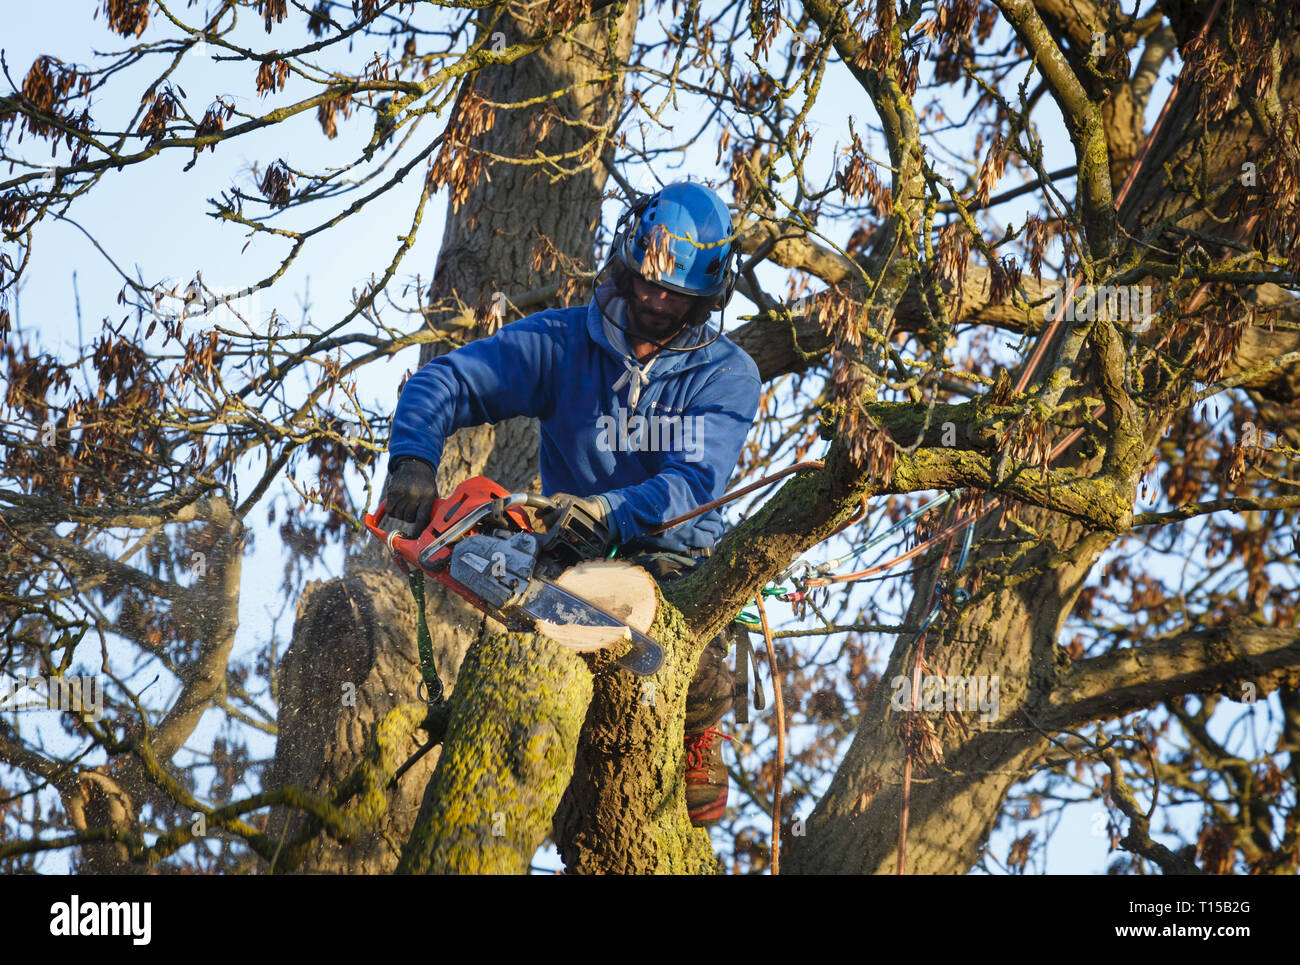 Buckingham, Großbritannien - 30 Januar, 2019. Ein Baum Chirurg verwendet eine Kettensäge ein Zweig von einer Eiche zu schneiden. Stockfoto